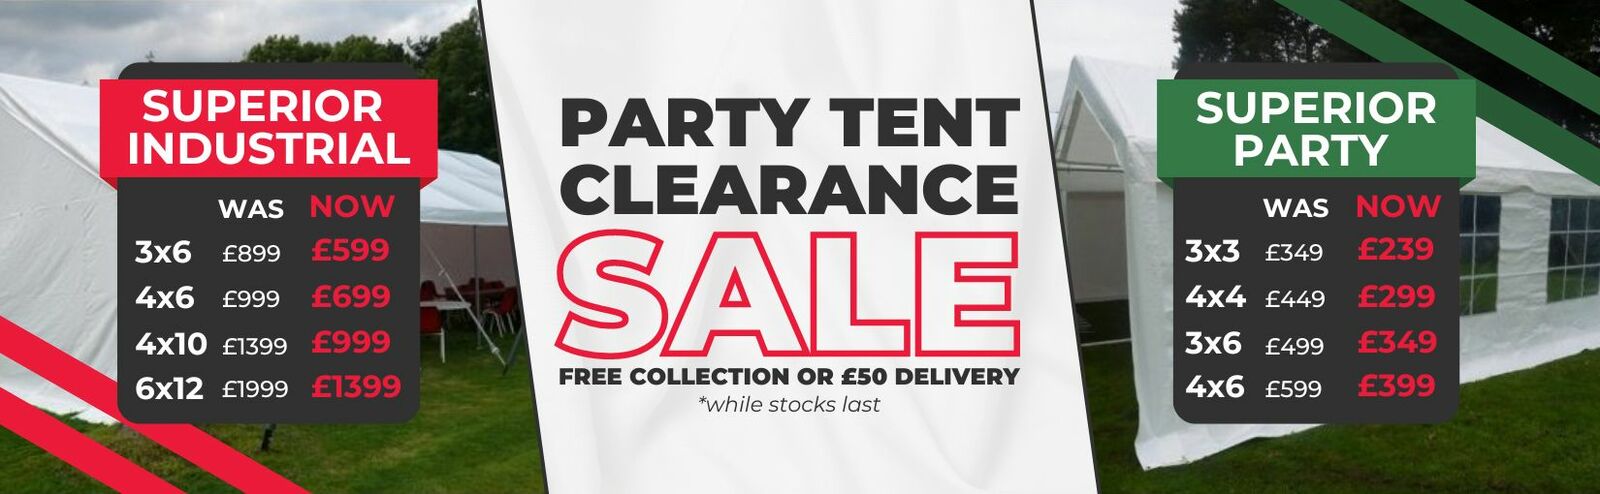 Party Tent Sale Web Banner